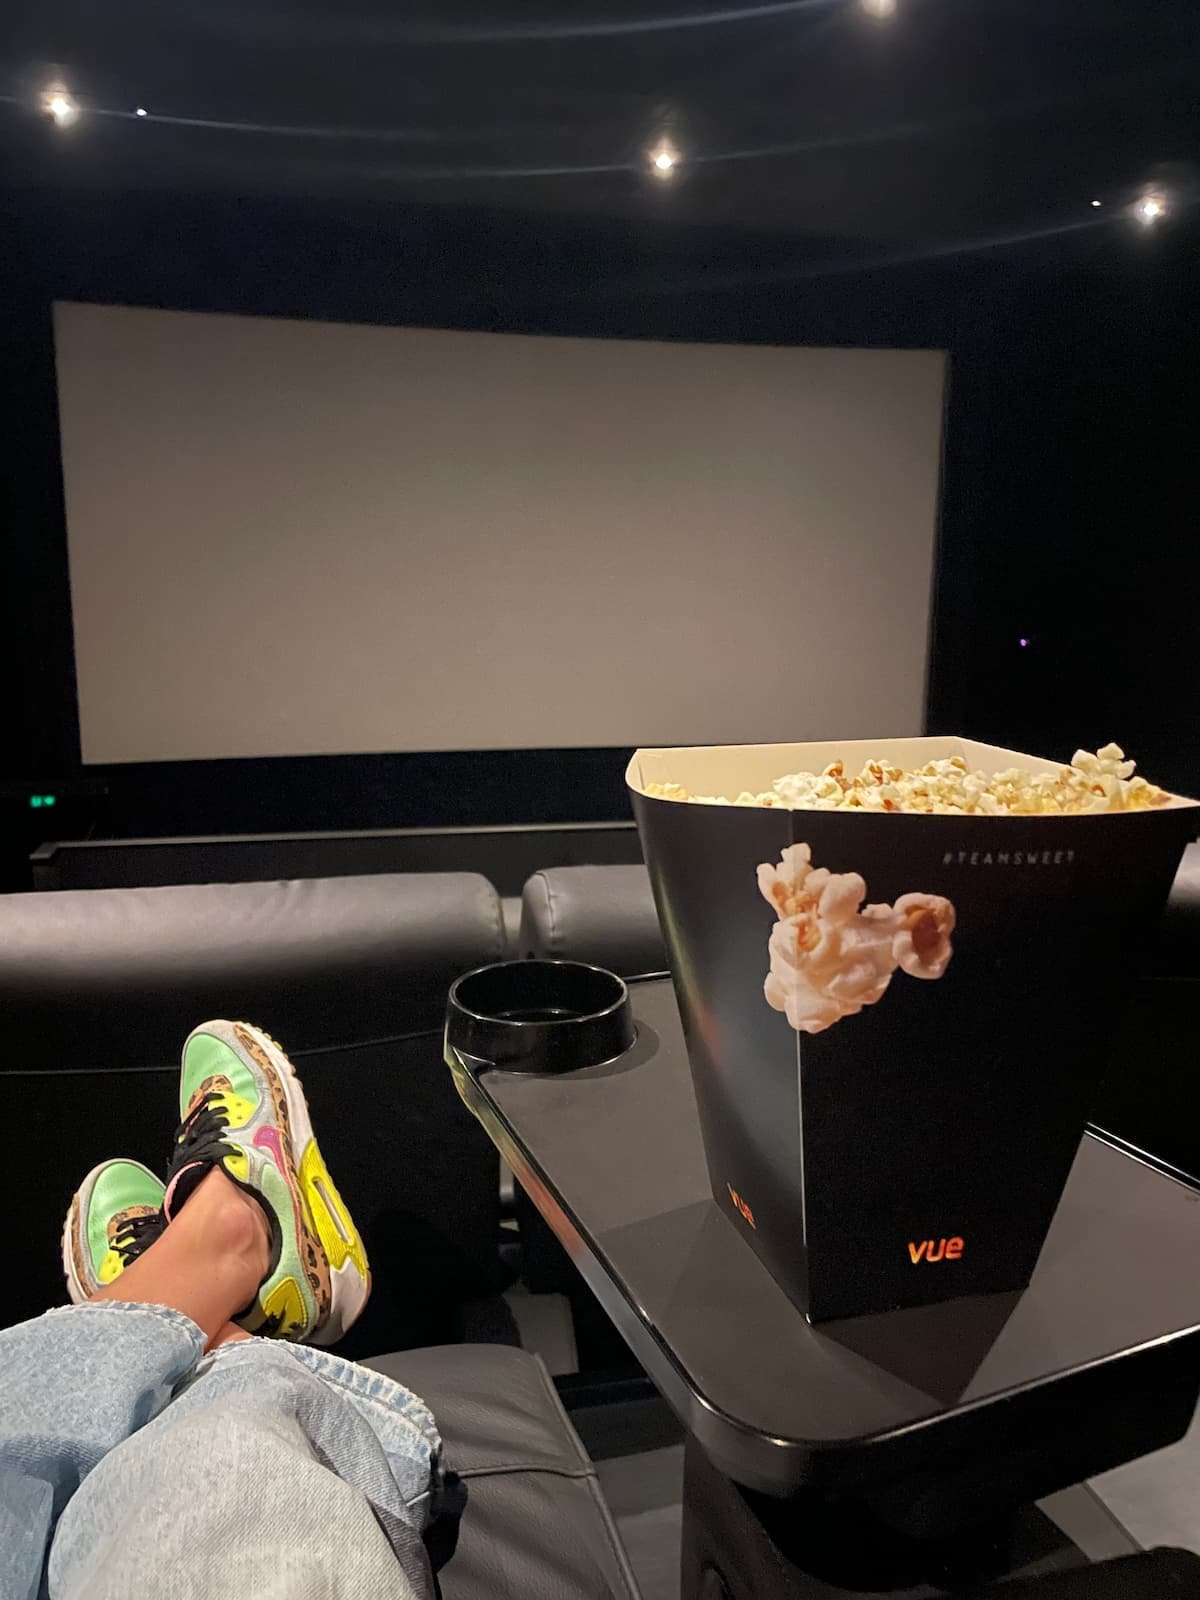 Vue Bristol Cribbs Cinema popcorn and movie